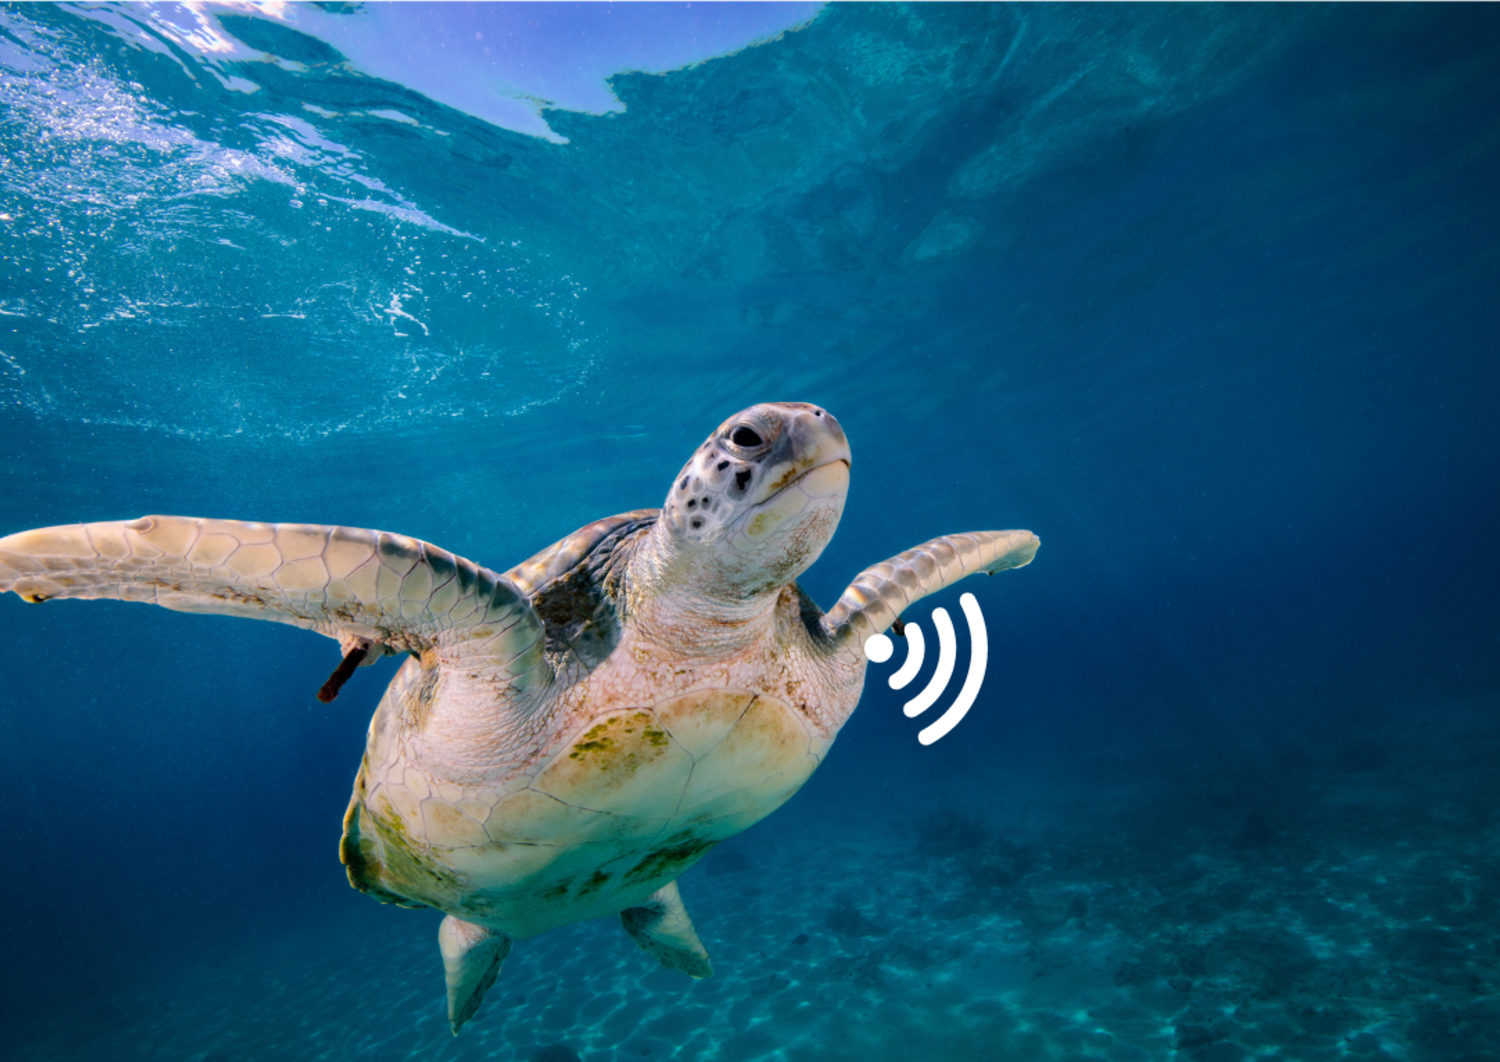 Meeresschildkröte mit Signal, welches beispielsweise das Befinden oder andere Informationen sendet.